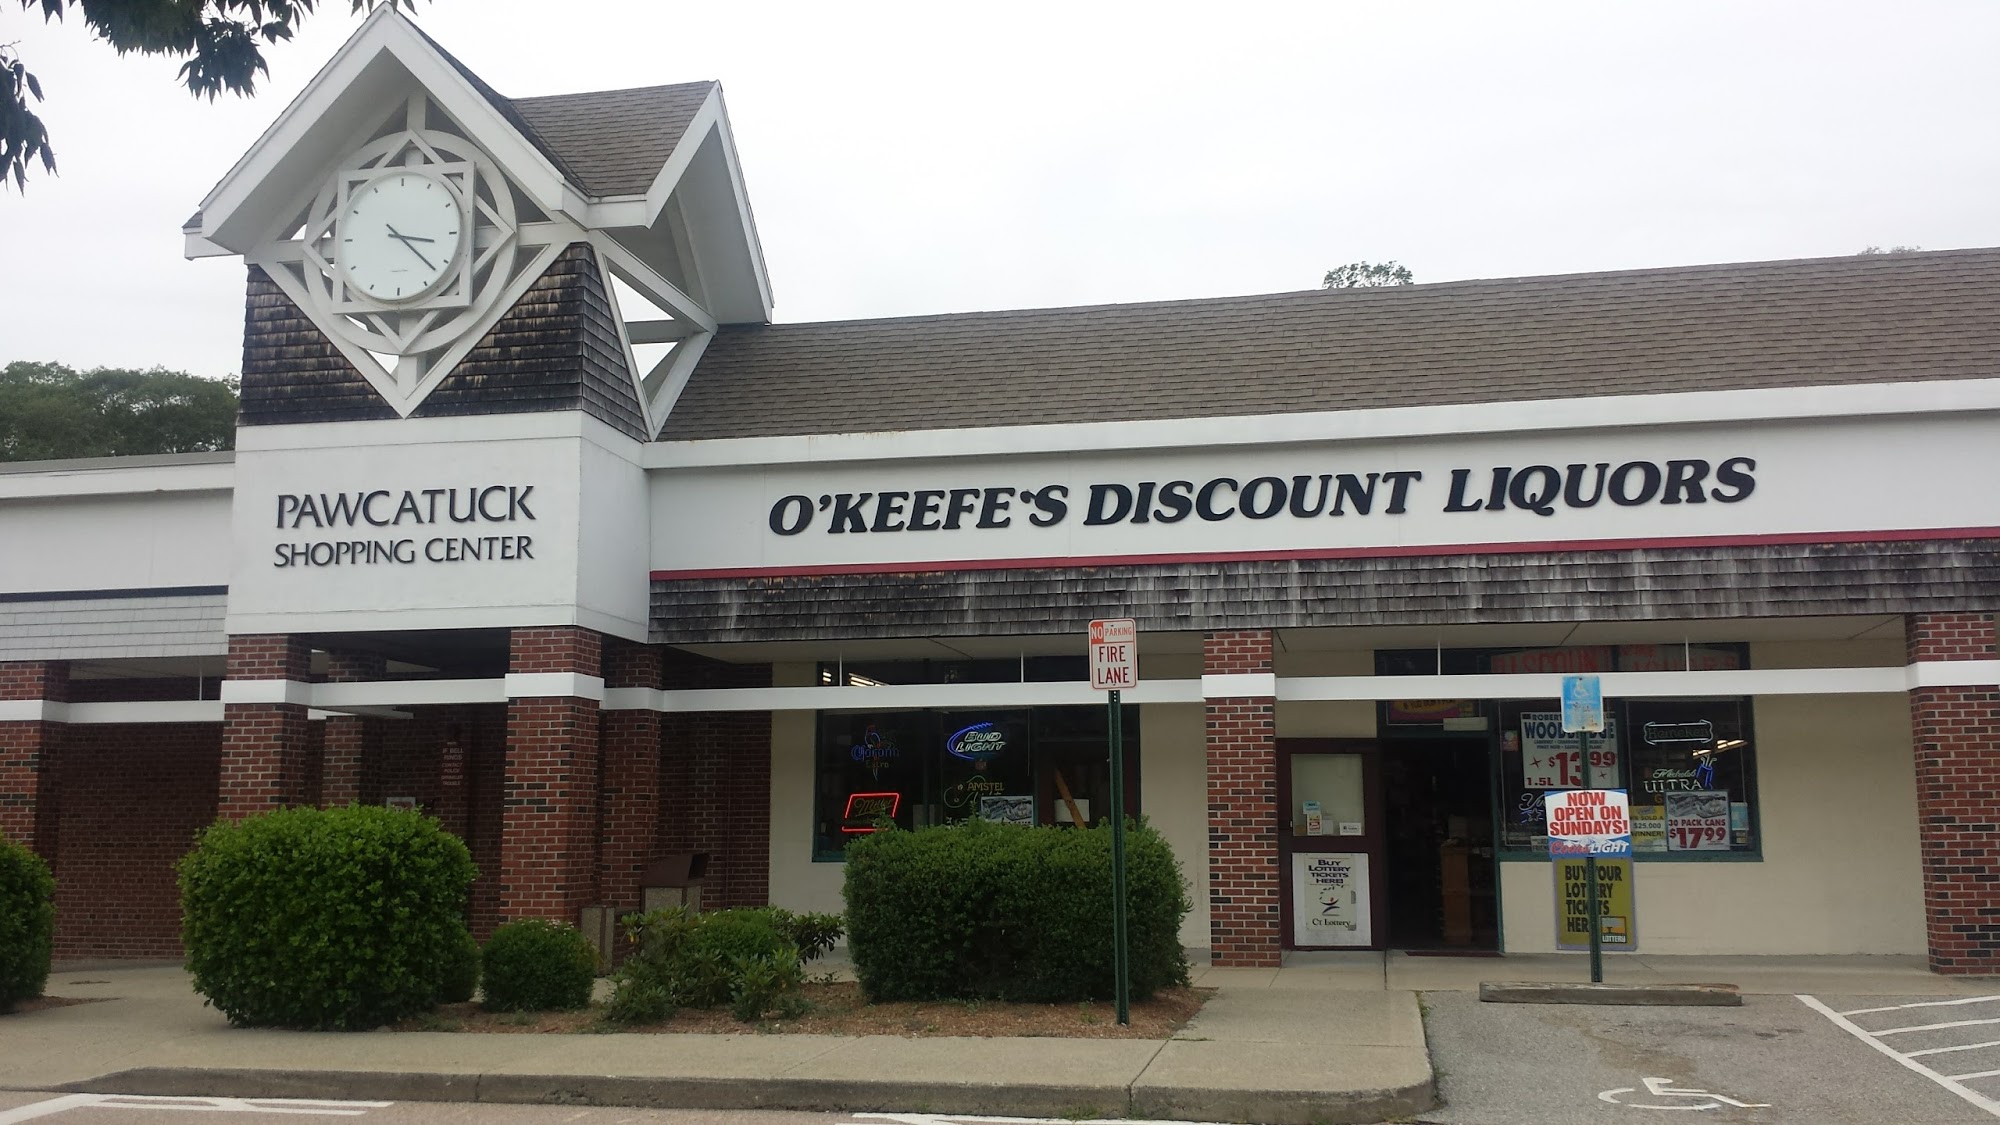 O'Keefe's Discount Liquor Store